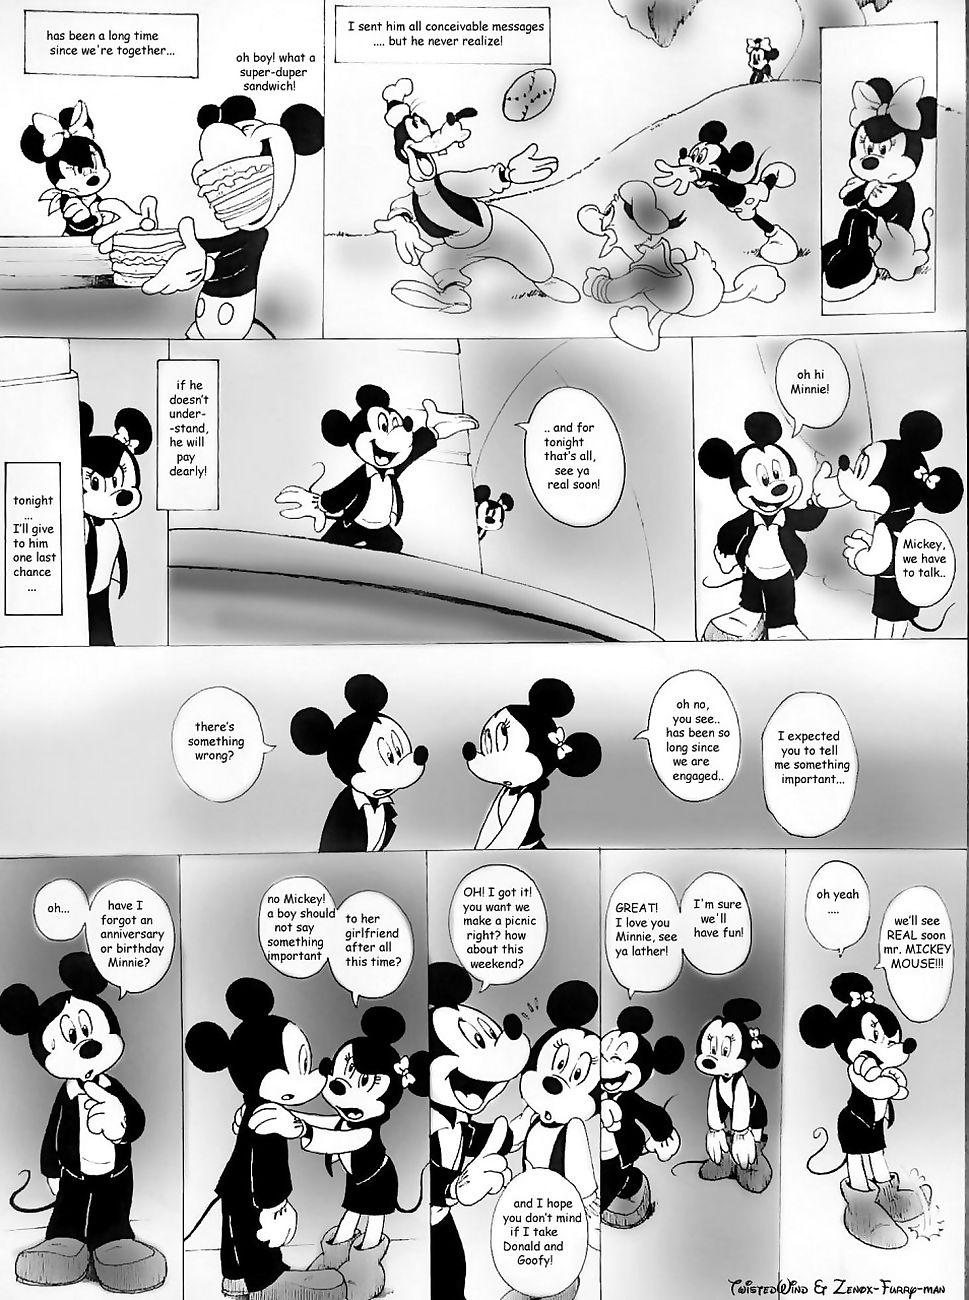 Casa de mouse XXX page 1